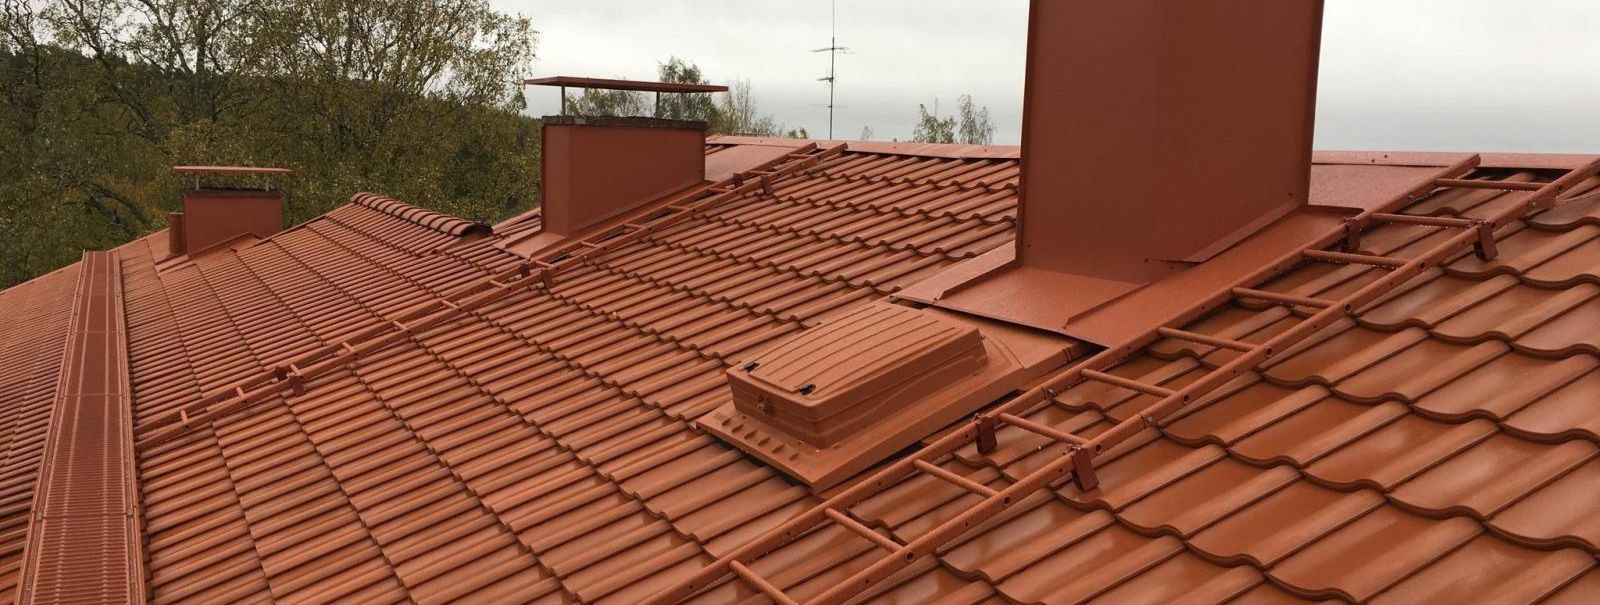 AVKatus OÜ usub, et katus on enamat kui lihtsalt varjualune; see on ohutuse, usaldusväärsuse ja kvaliteedi lubadus. Üle kümne aasta kestnud kogemusega katuseala